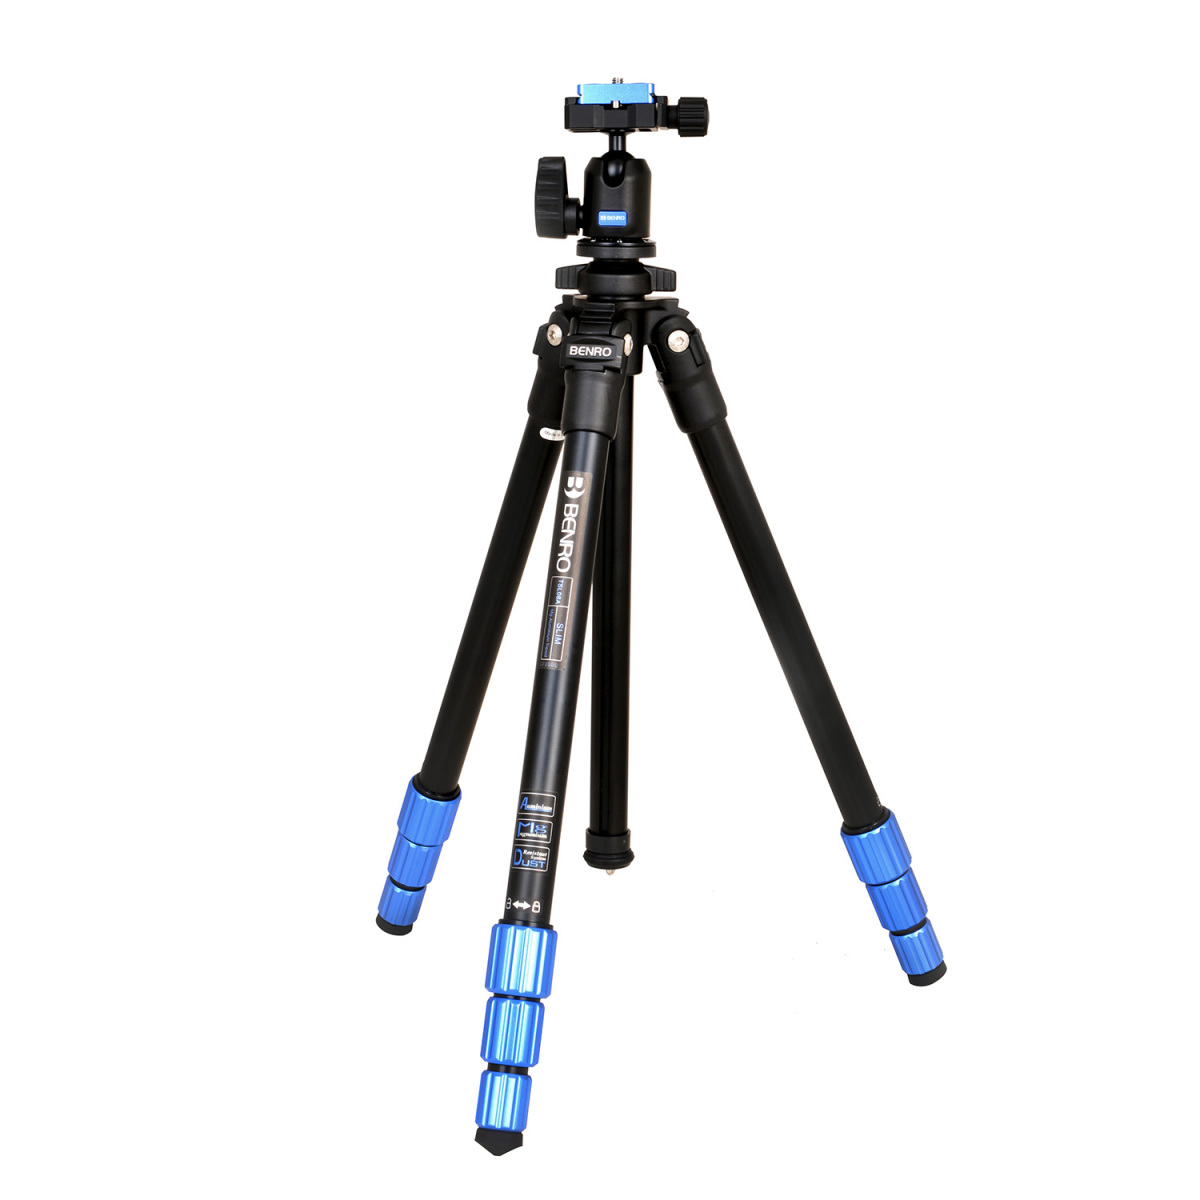 ベンロ TSL 雲台付 TSL08AN00 カメラ用三脚の商品画像